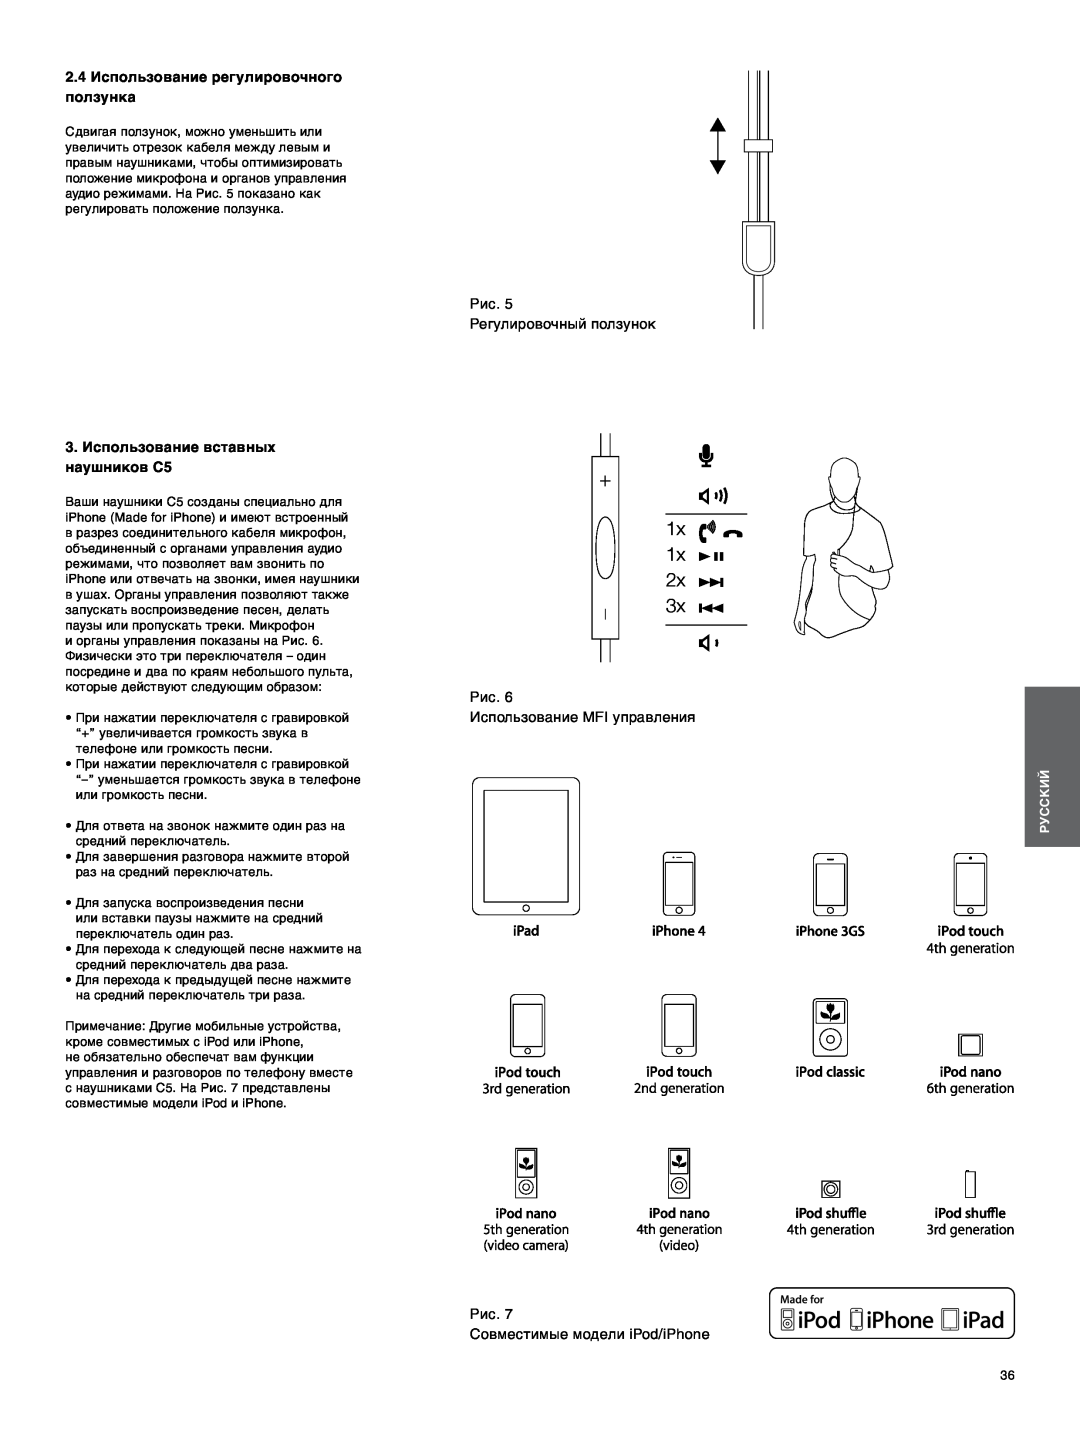 Bowers & Wilkins C5 manual 1x, 2.4Использование регулировочного ползунка, Рис. Регулировочный ползунок, Русский 